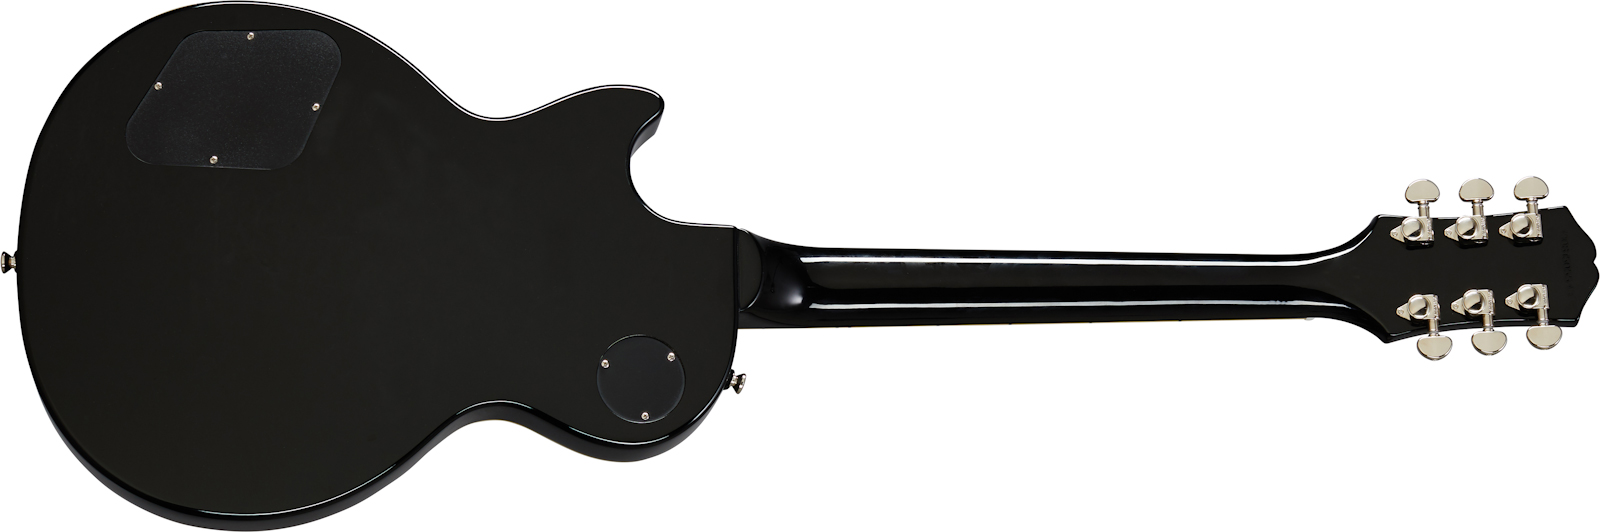 Epiphone Les Paul Classic Modern 2020 2h Ht Lau - Ebony - Guitarra eléctrica de corte único. - Variation 1